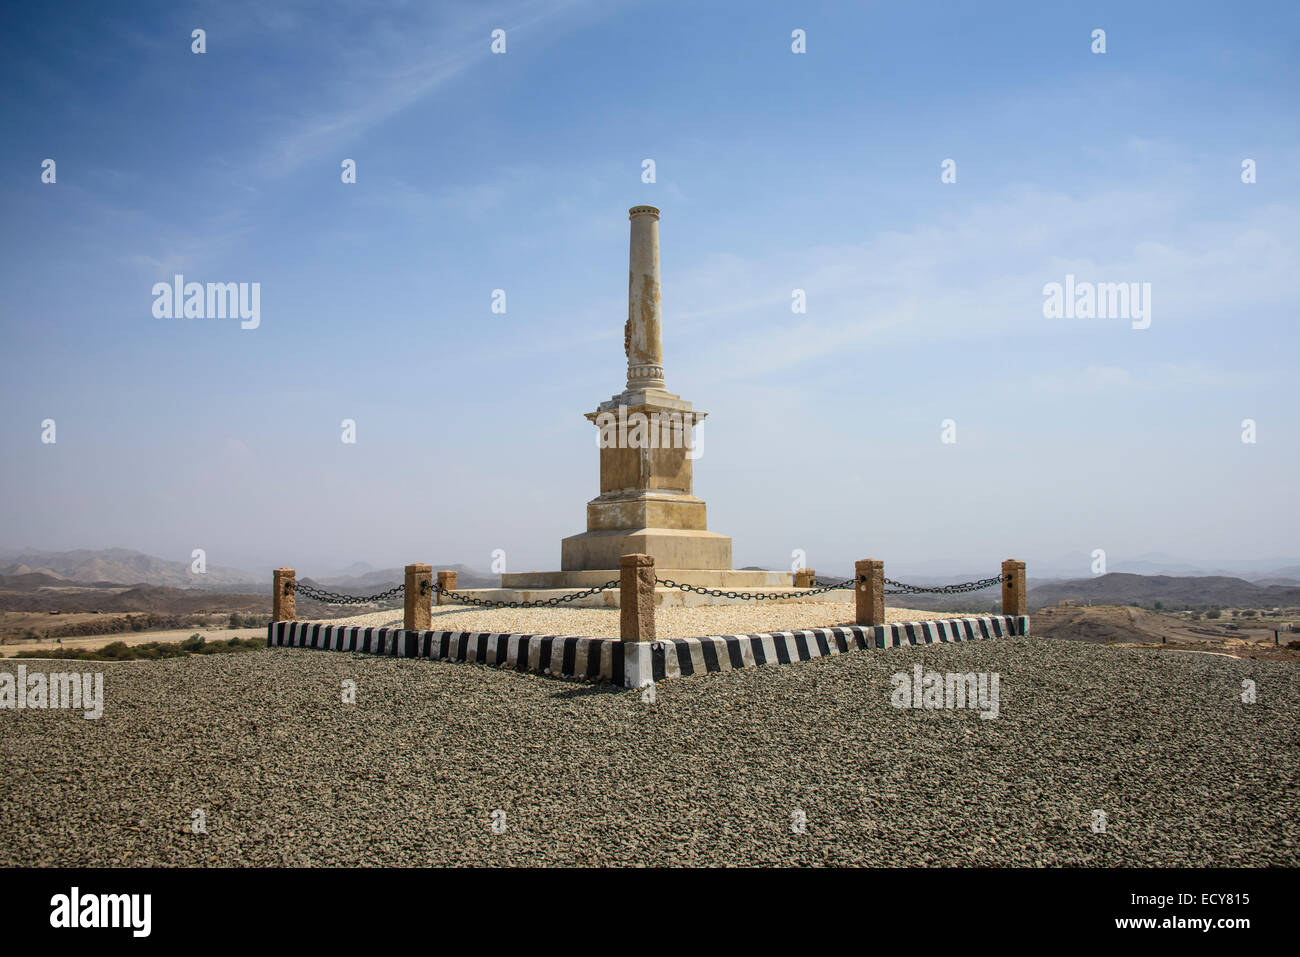 Monument à la première défaite des blancs de l'Érythrée, le long de la route de Massawa à Asmarra, Erythrée Banque D'Images